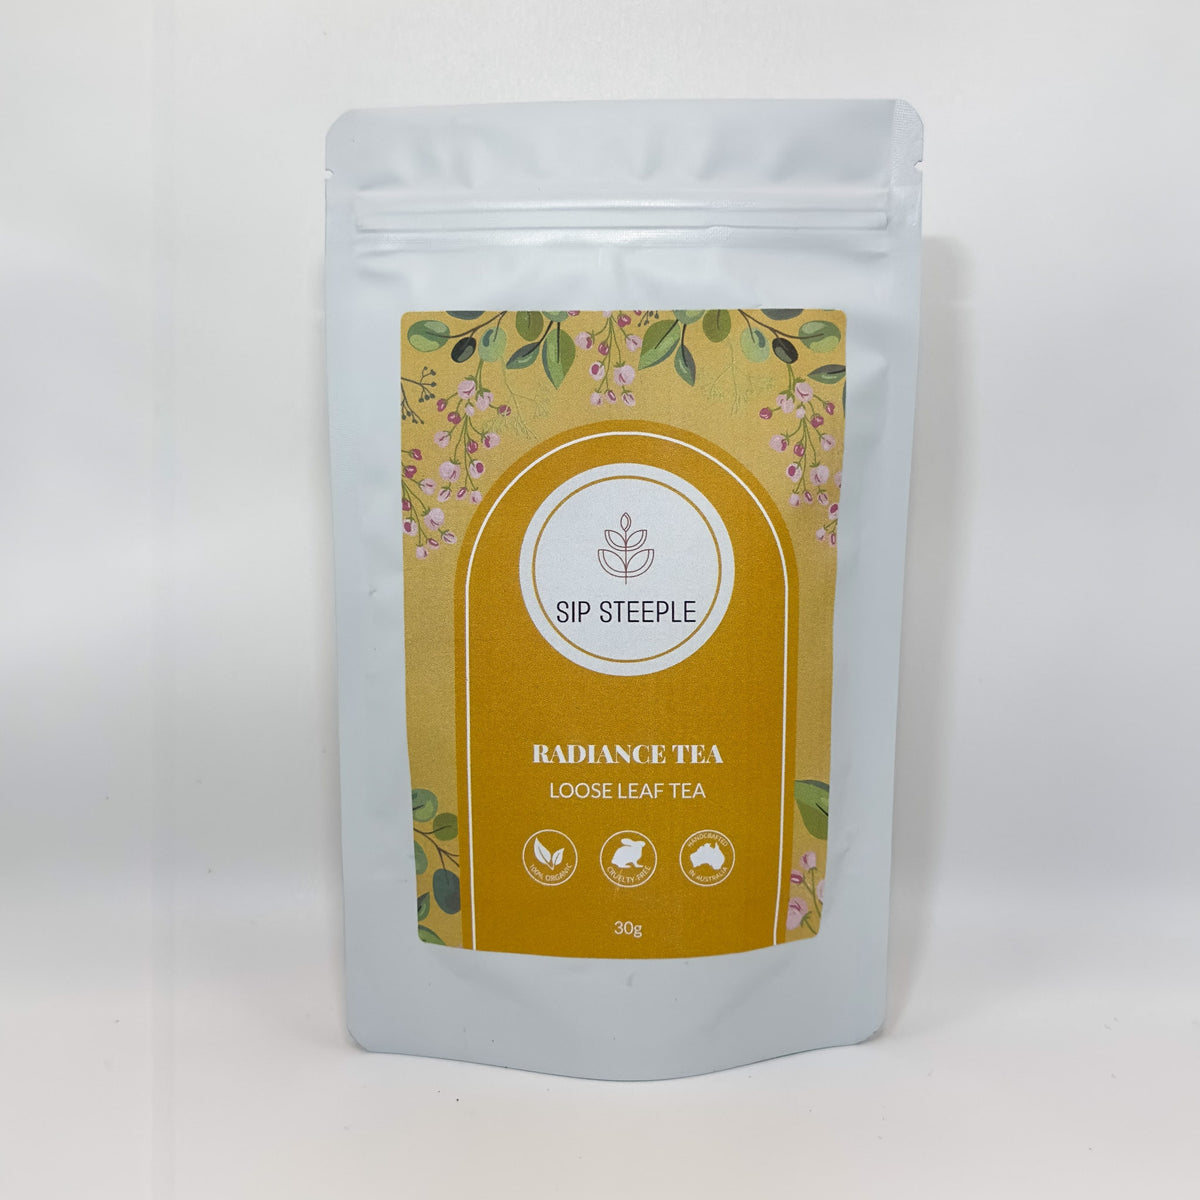 Sip Steeple Radiance Tea Packaging